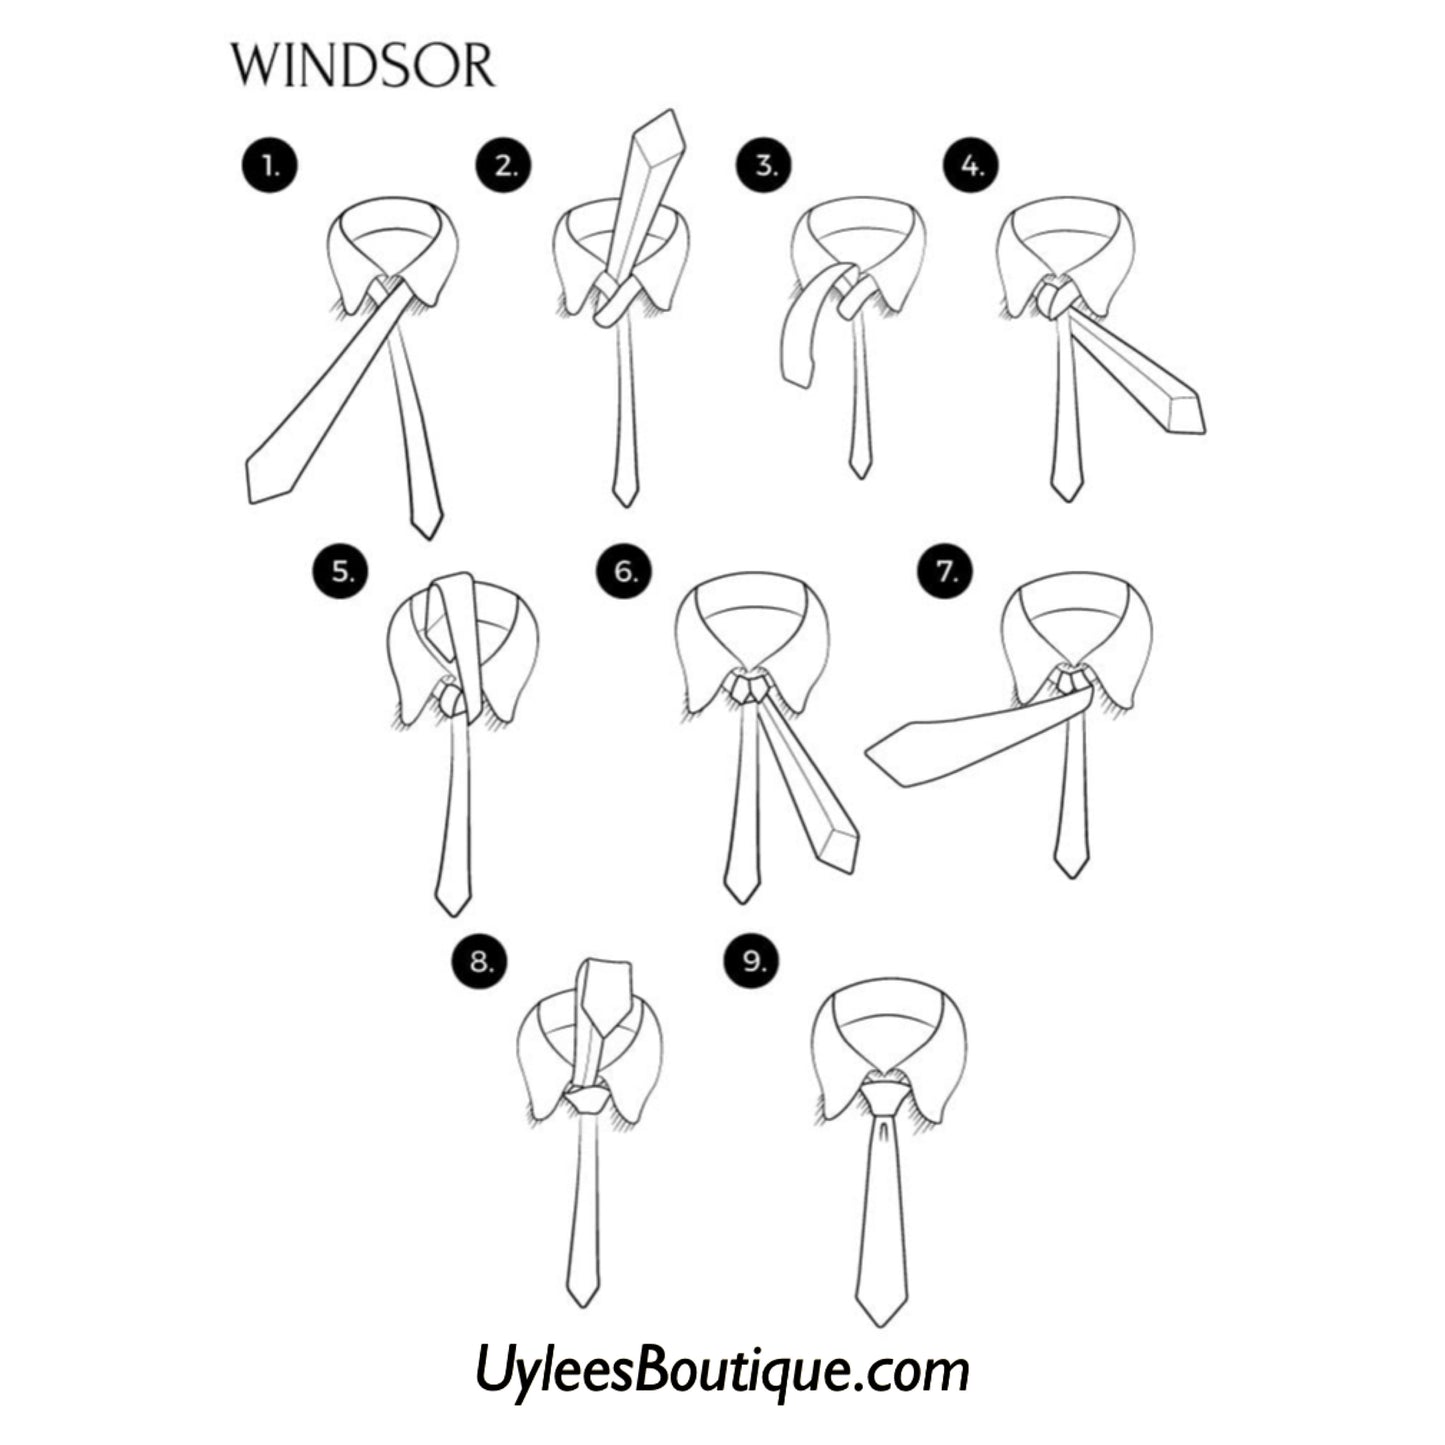 Men’s Silk Coordinated Tie Set - Burgundy Brown Striped (5299)